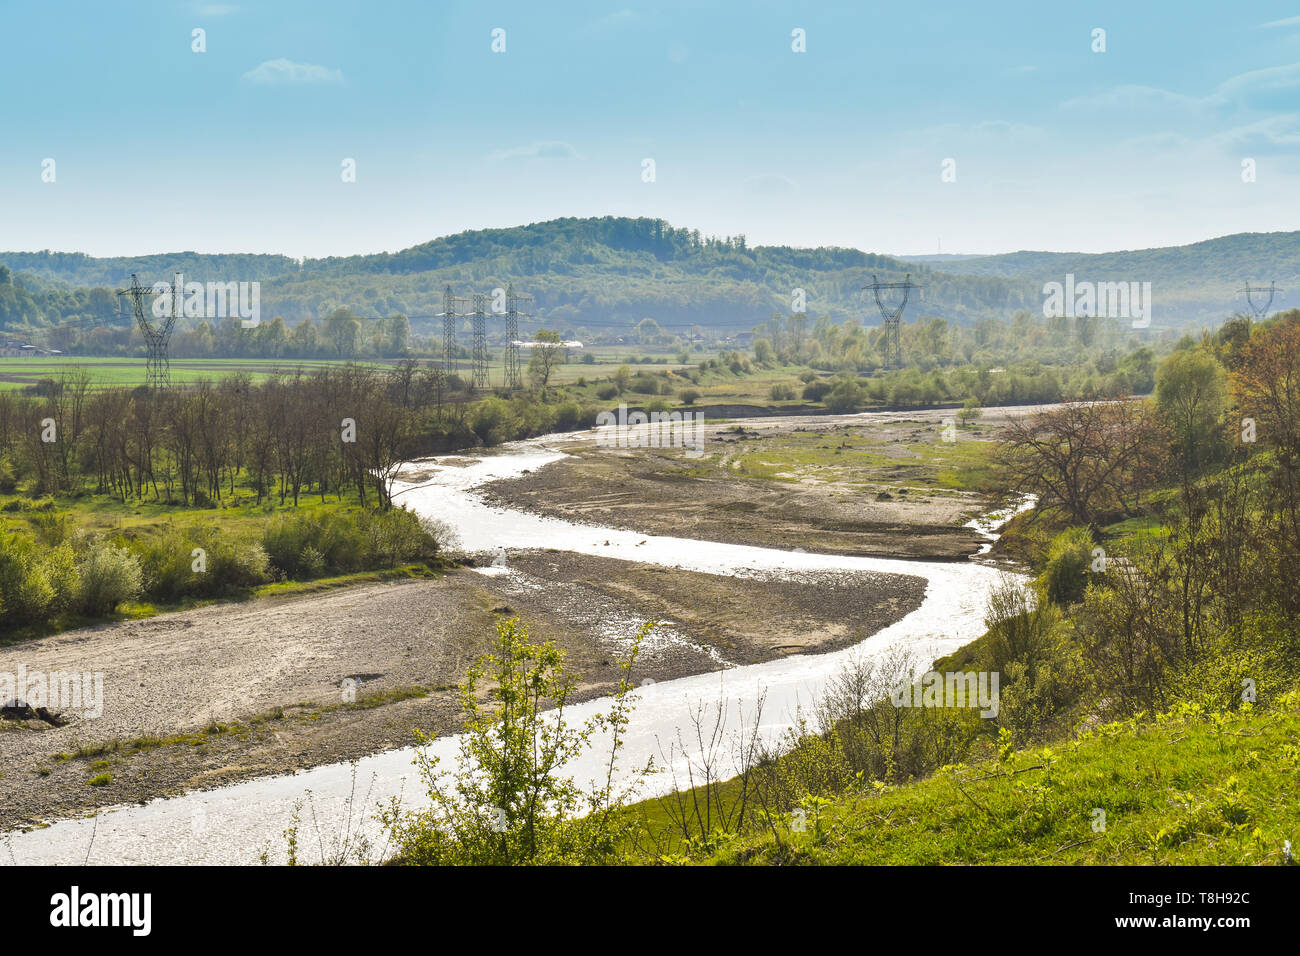 Shining fiume che attraversa la valle verde. La foto è stata scattata una soleggiata giornata estiva Foto Stock